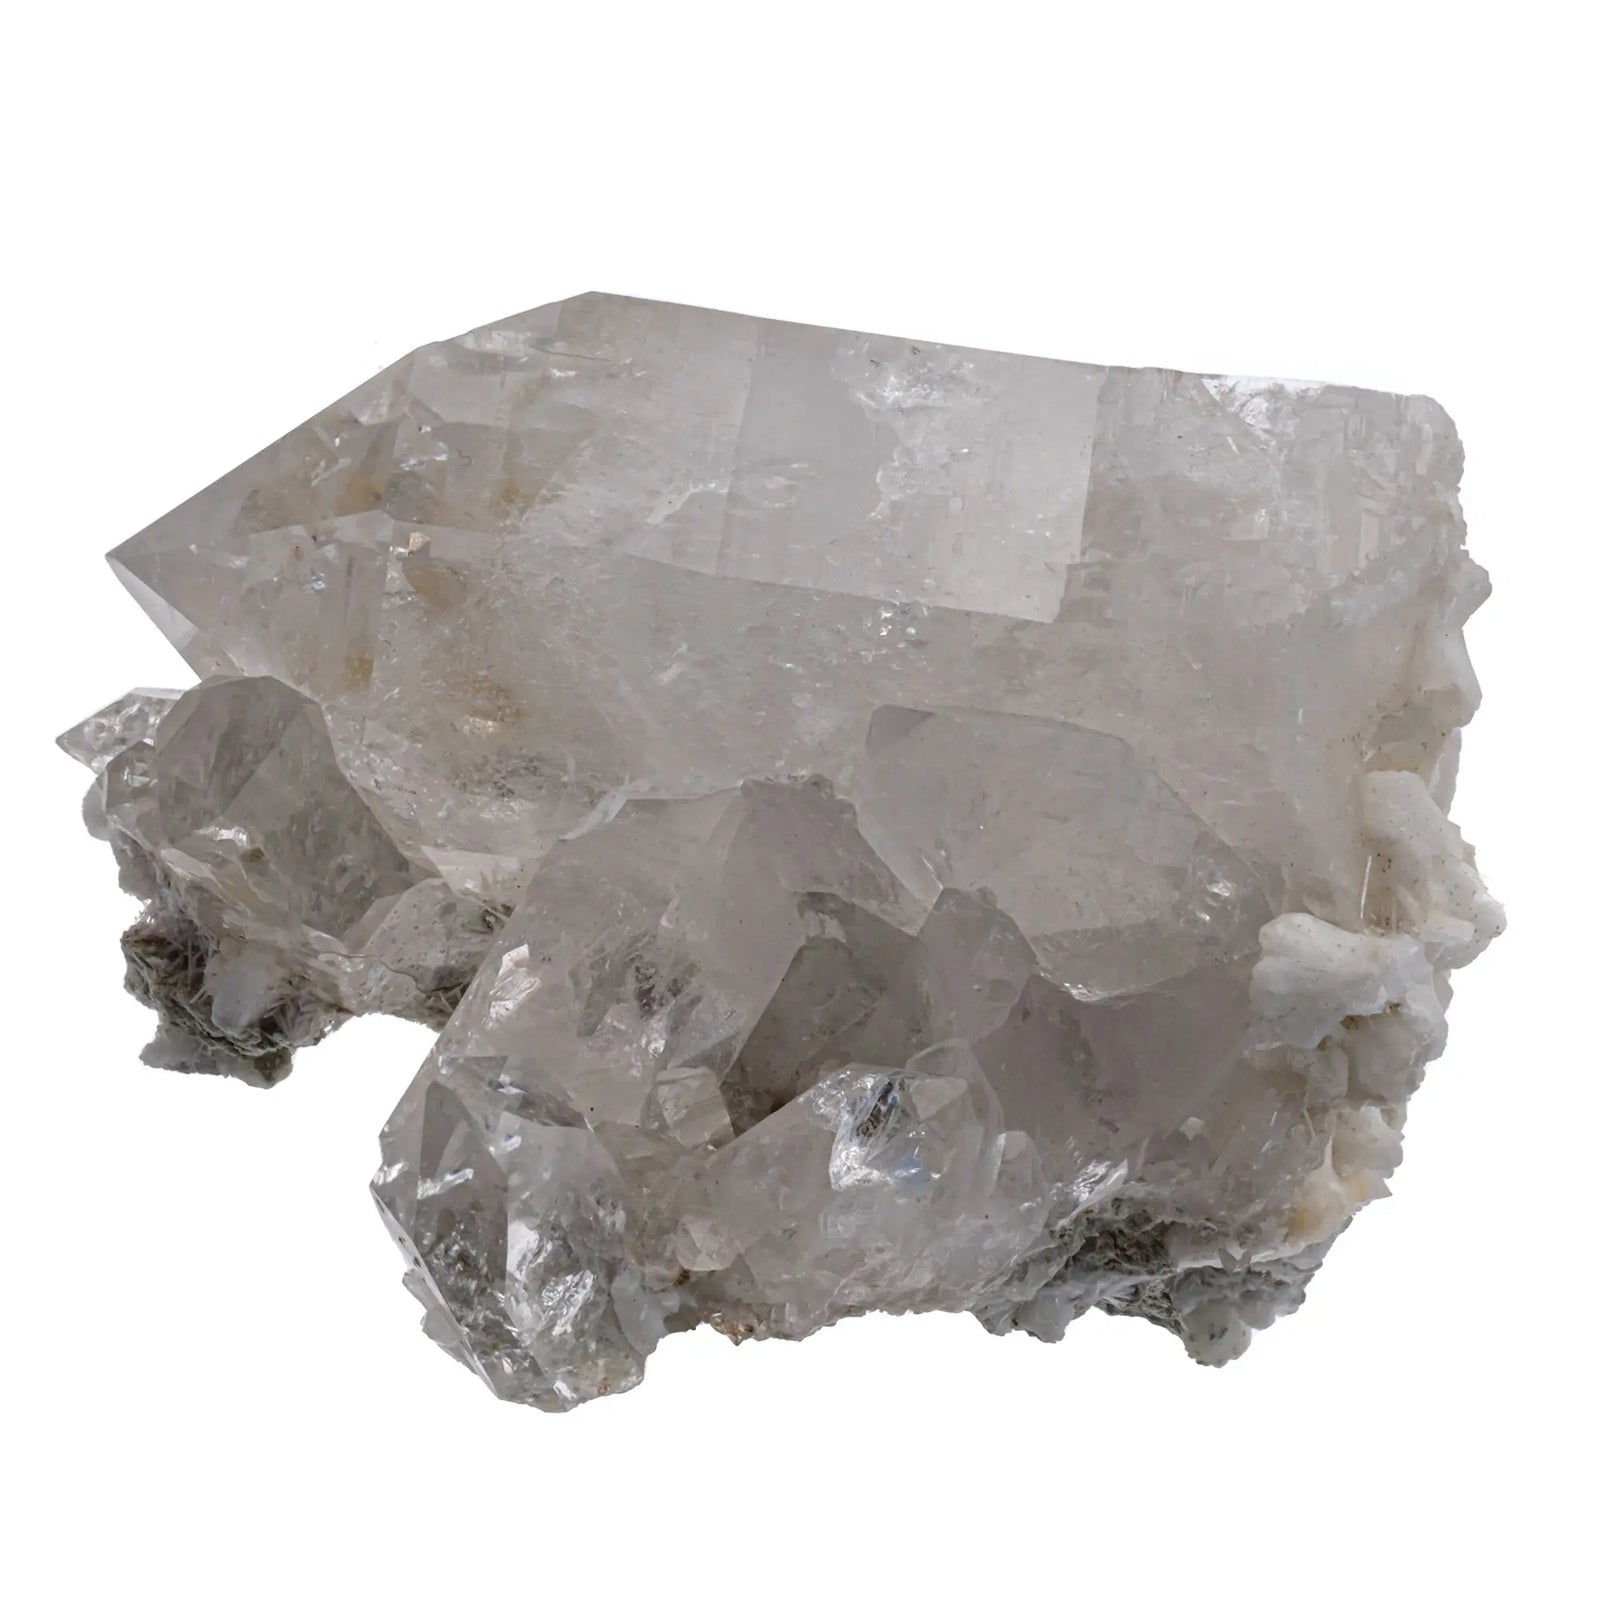 Cristal de roche cristaux bruts avec stilbite et scolecite  - CRISTAL SOURCES